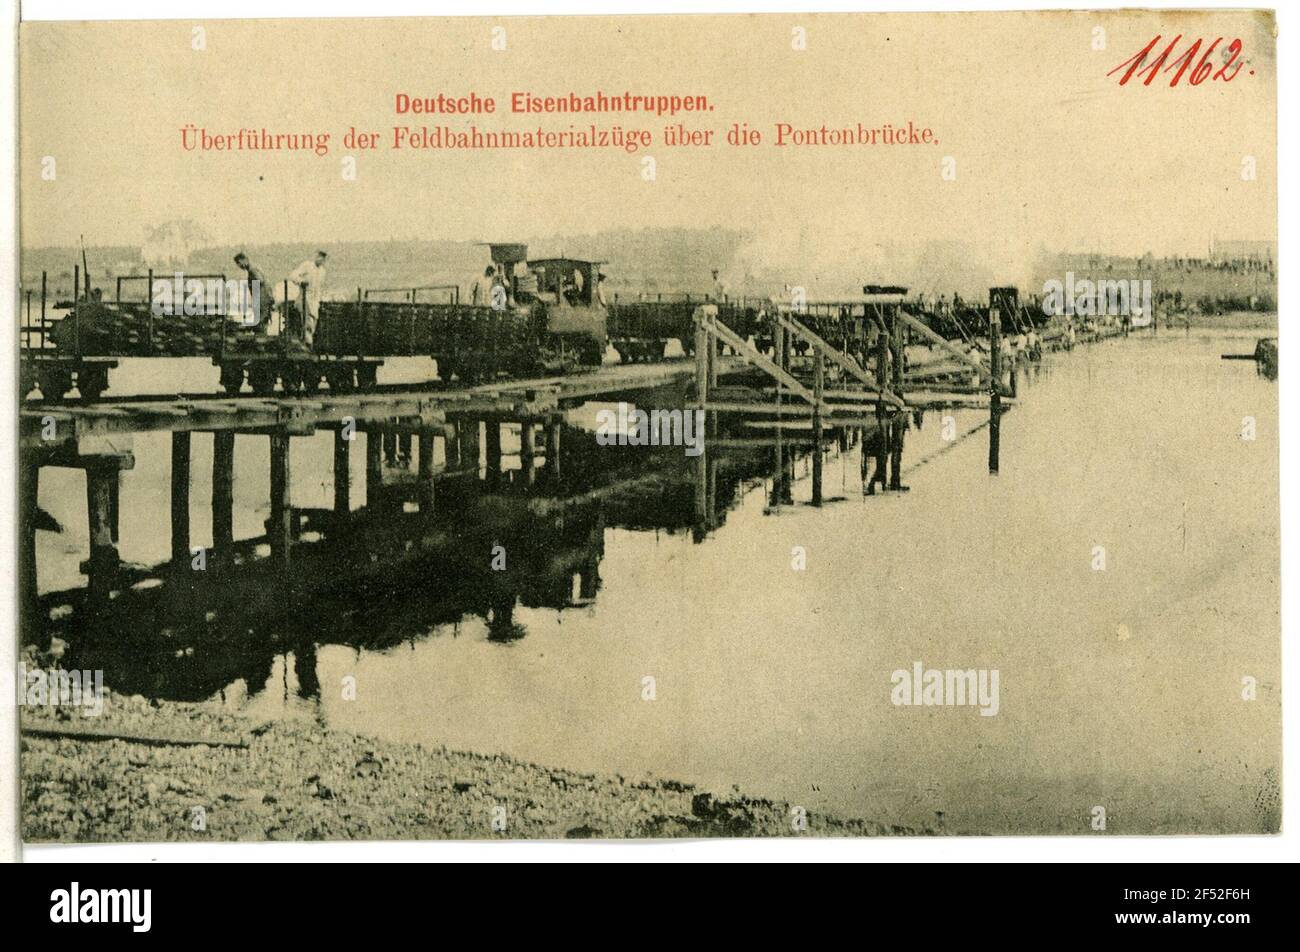 Troupes de chemin de fer allemandes - transfert via le pont ponton troupes de chemin de fer allemandes. Transfert sur le pont ponton Banque D'Images